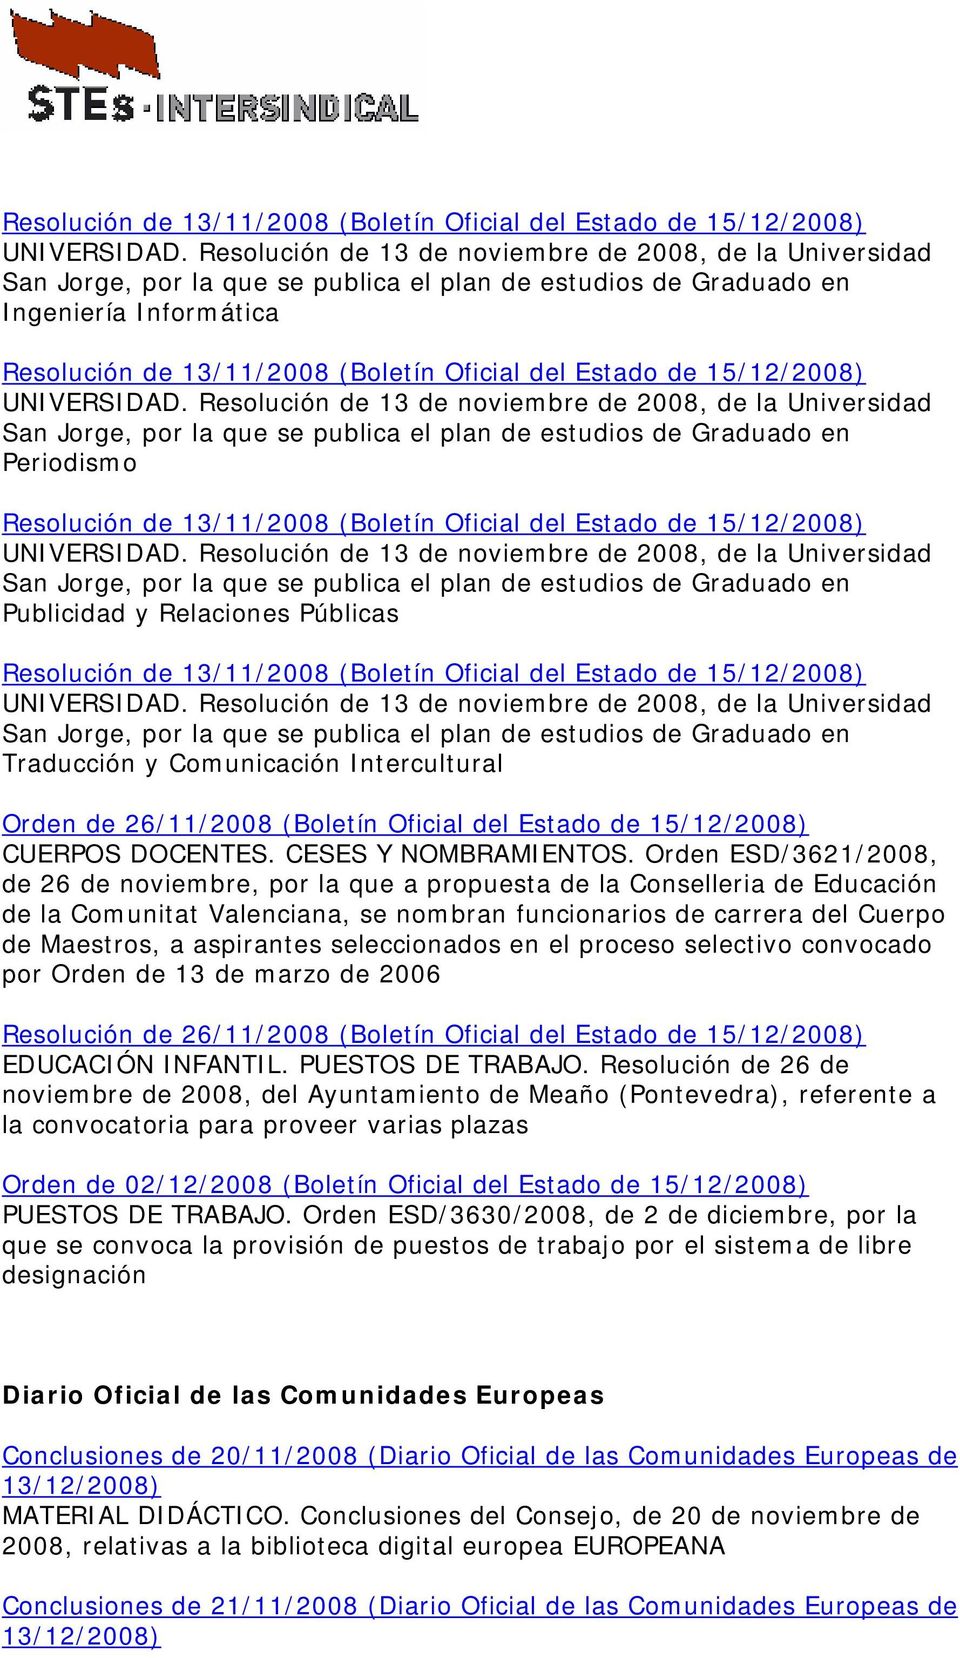 Universidad San Jorge, por la que se publica el plan de estudios de Graduado en Periodismo  Resolución de 13 de noviembre de 2008, de la Universidad San Jorge, por la que se publica el plan de